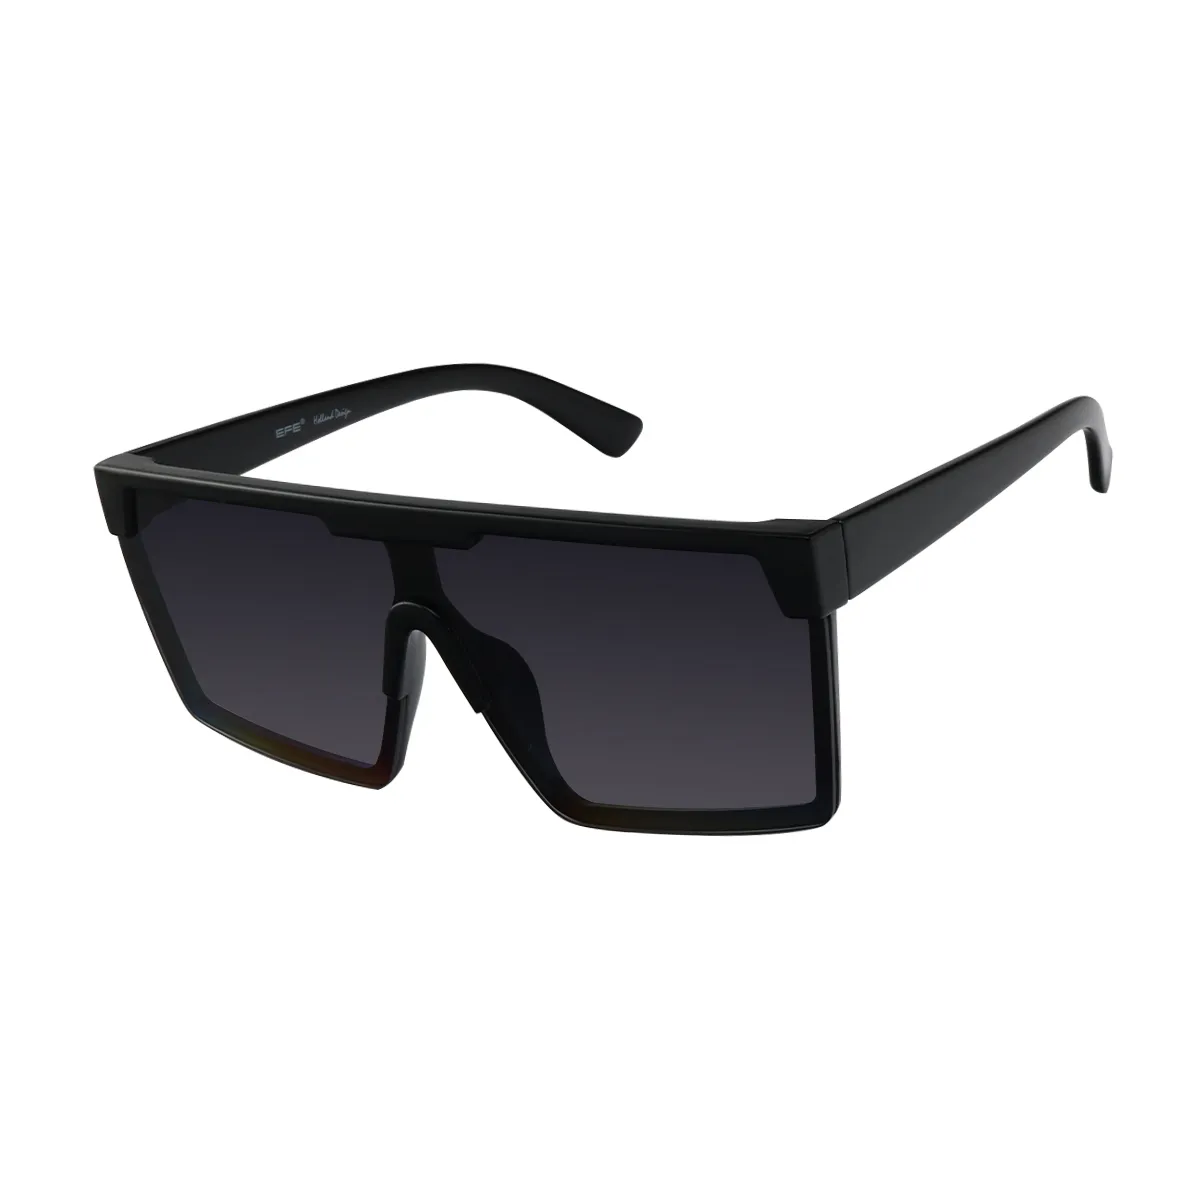 Reese -  Black Sunglasses for Women